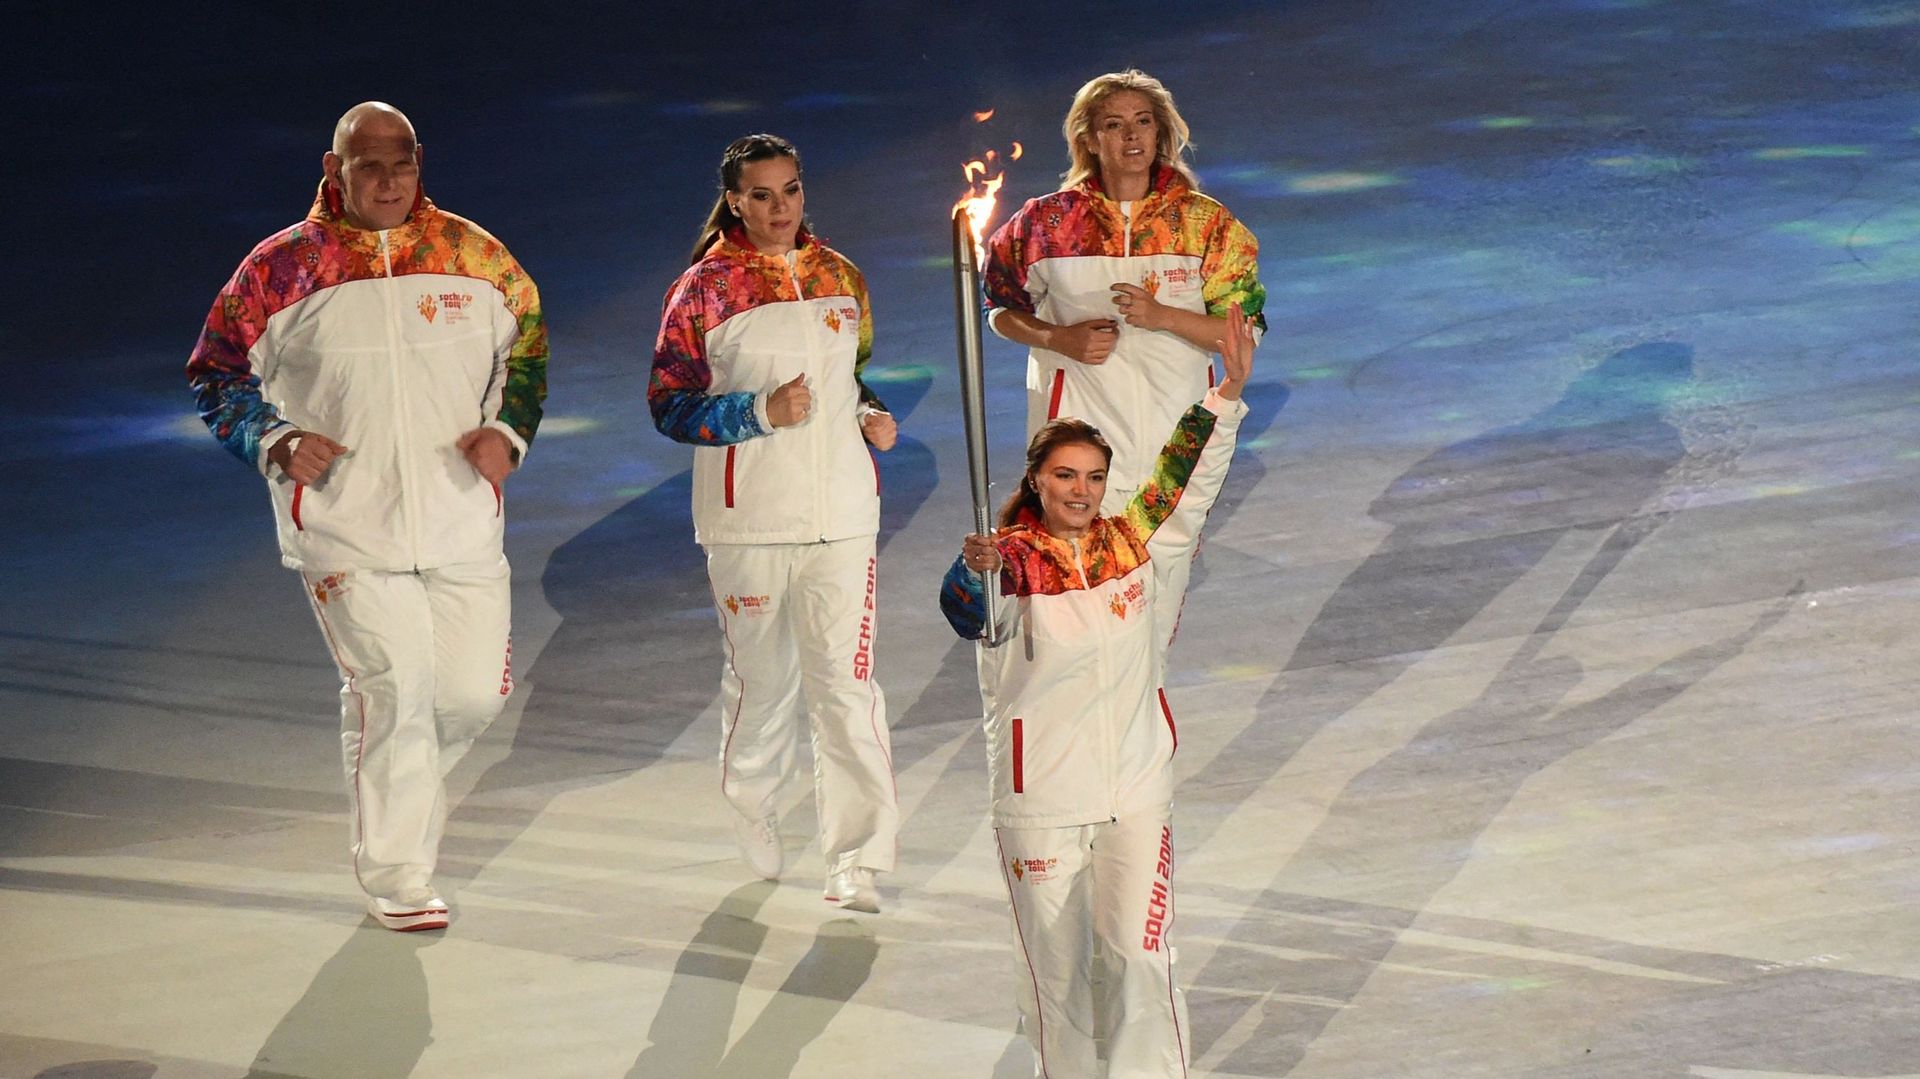 La gymnaste russe et médaillée olympique Alina Kabaeva tient la torche olympique lors de la cérémonie d'ouverture des Jeux olympiques d'hiver de Sotchi au stade olympique Fisht, le 7 février 2014 à Sotchi. 